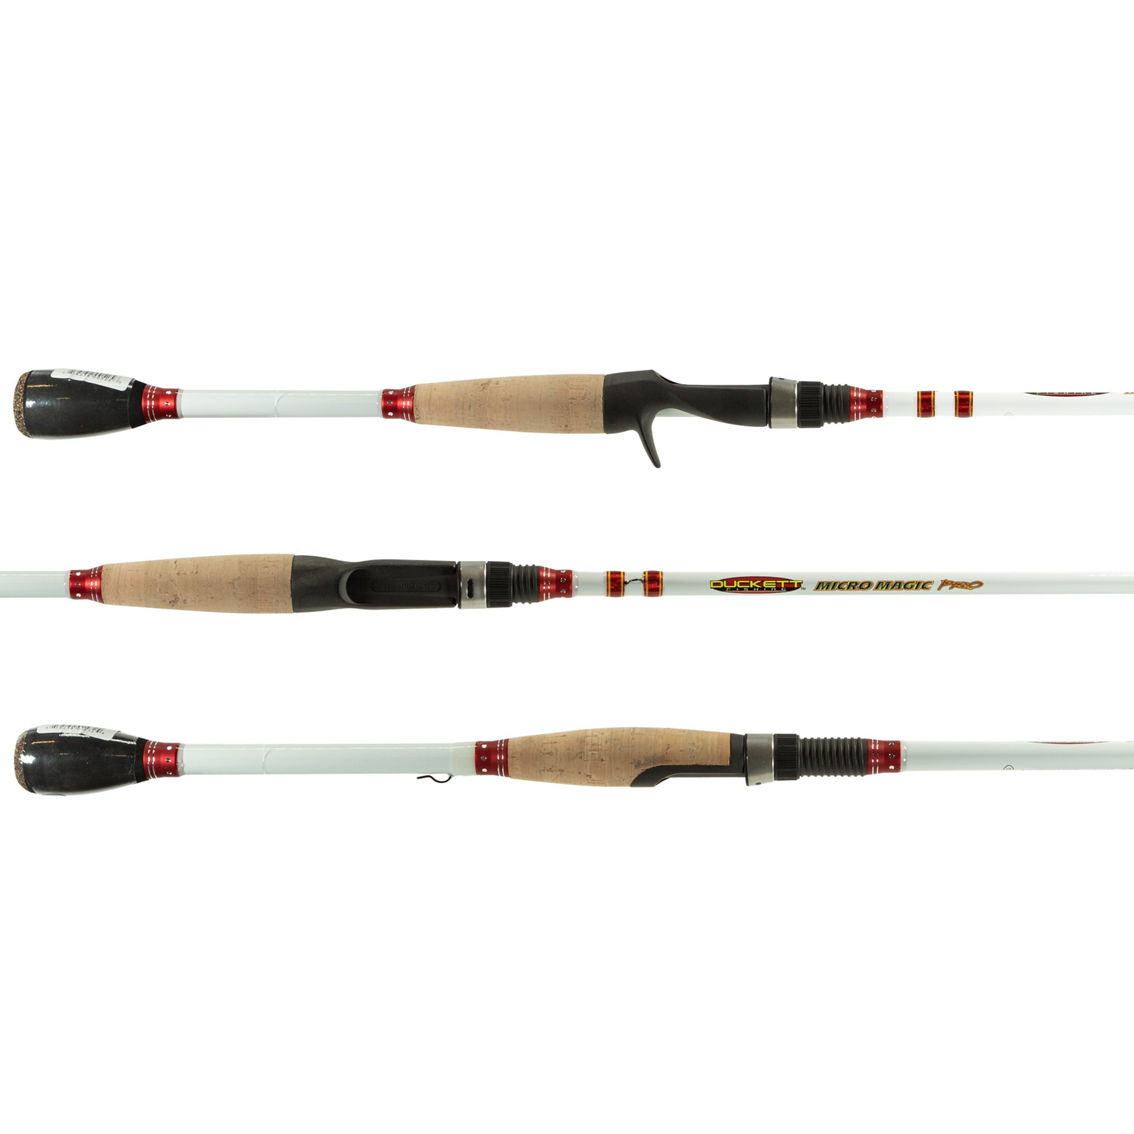 Duckett Fishing Micro Magic Pro 6'6 M Casting Rod